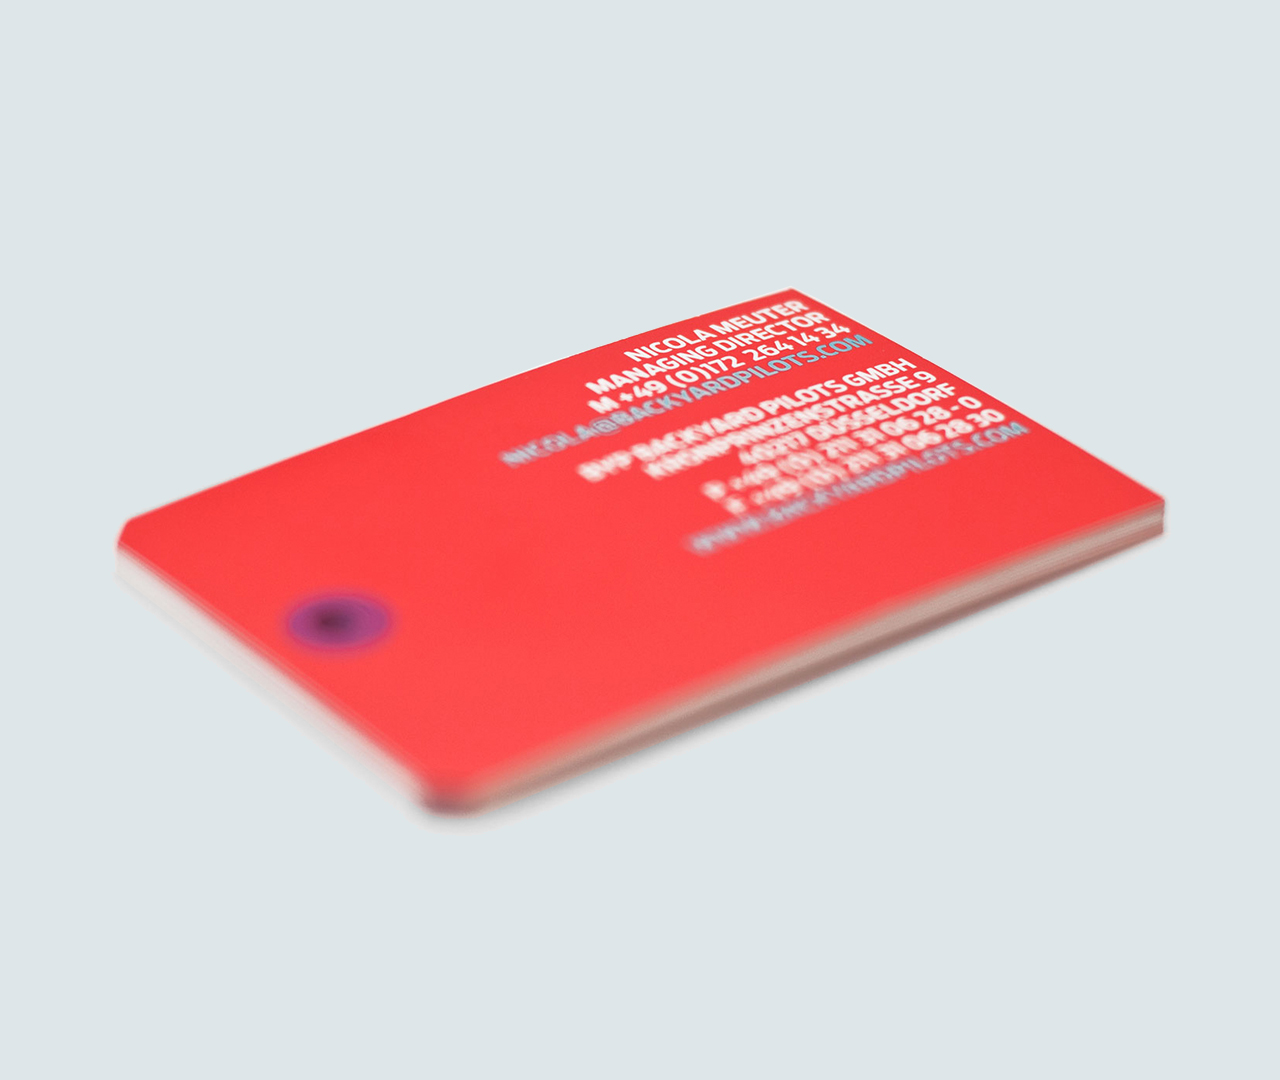 backyard-pilots-corporatedesign-cards-01